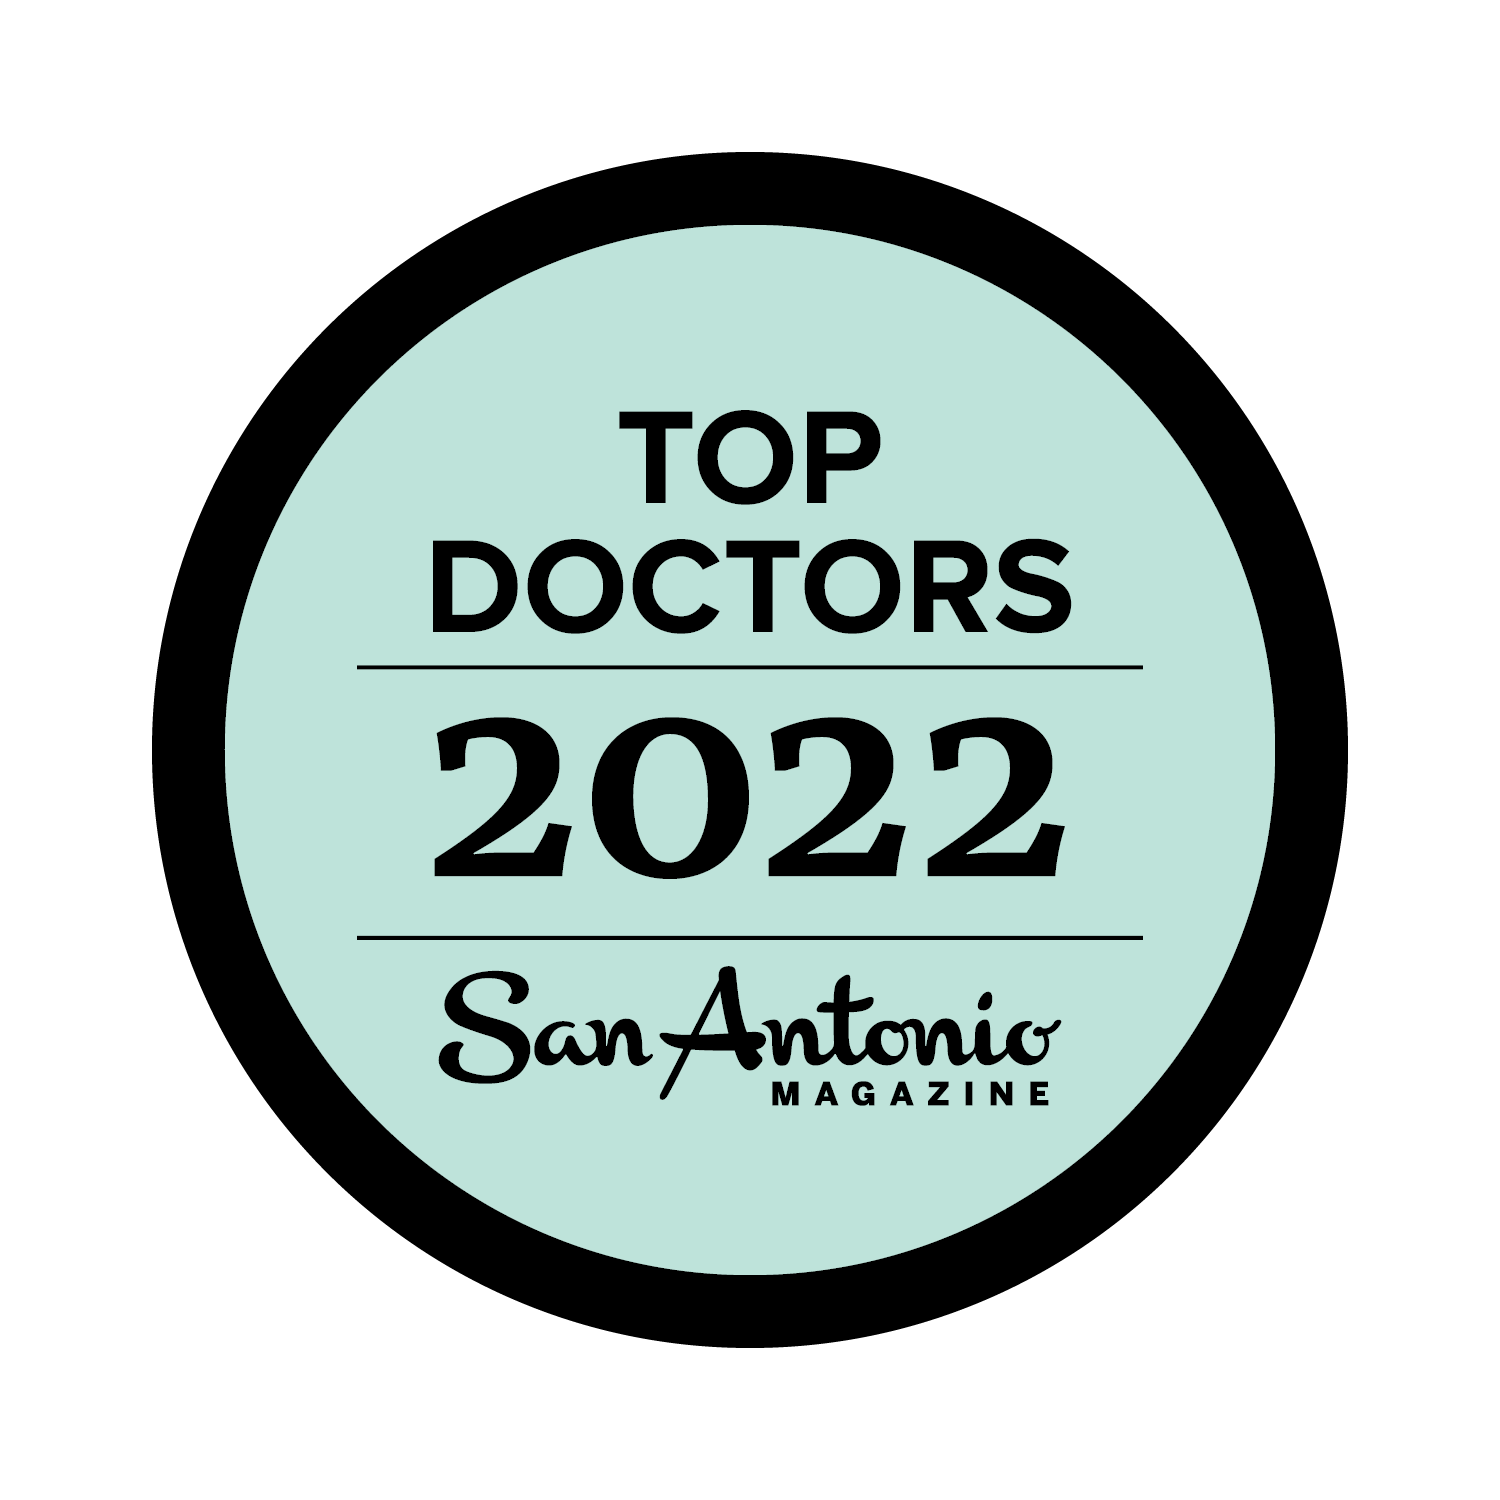 San Antonio Magazine Top Doctors 2022